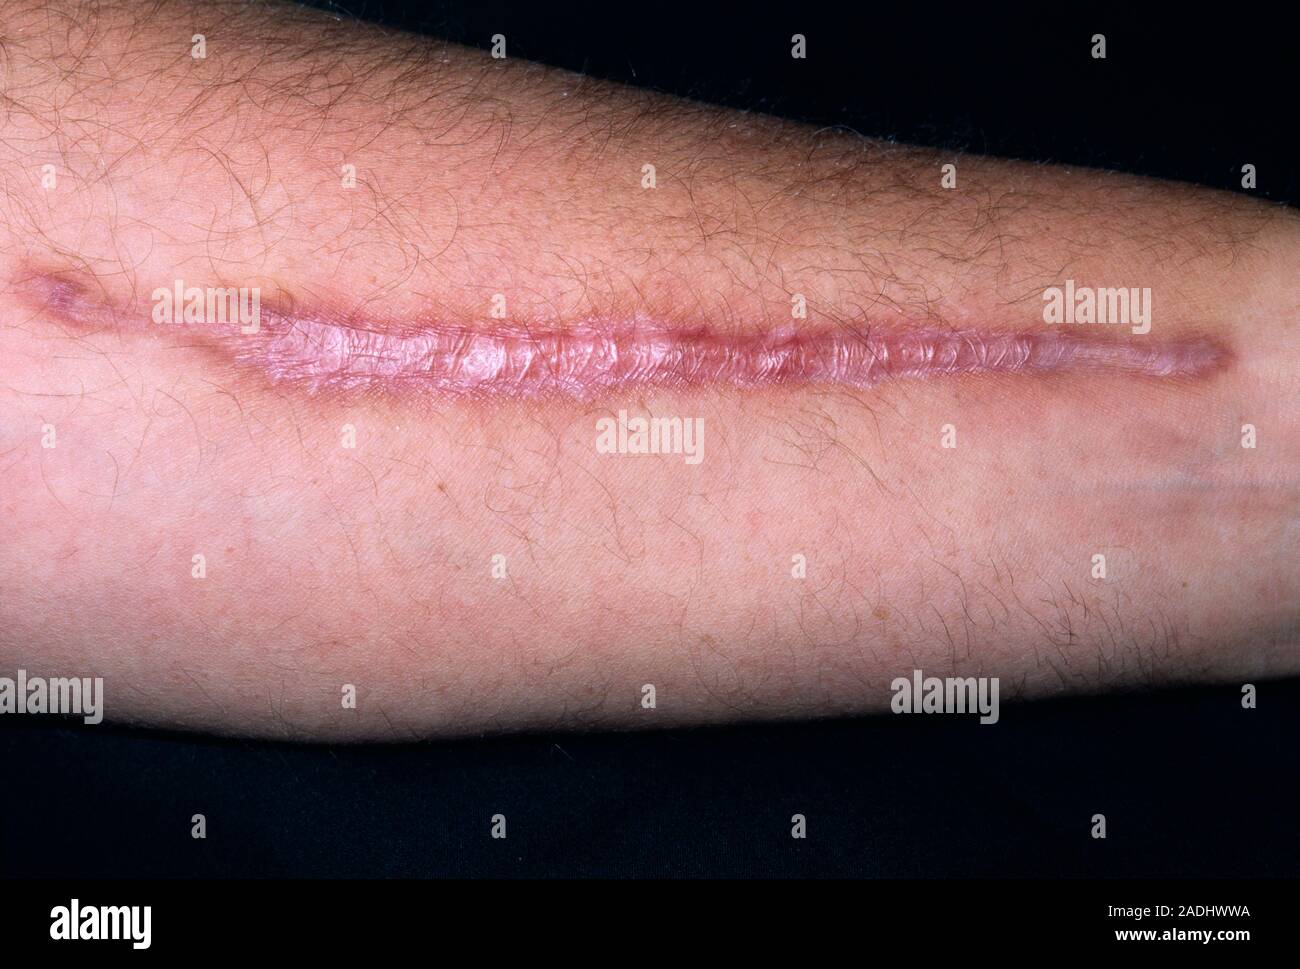 Cicatrice chéloïdes sur l'avant-bras d'un 57-year-old male patient après  une opération pour enlever une partie de l'artère radiale du bras. L'artère  a été colle Photo Stock - Alamy